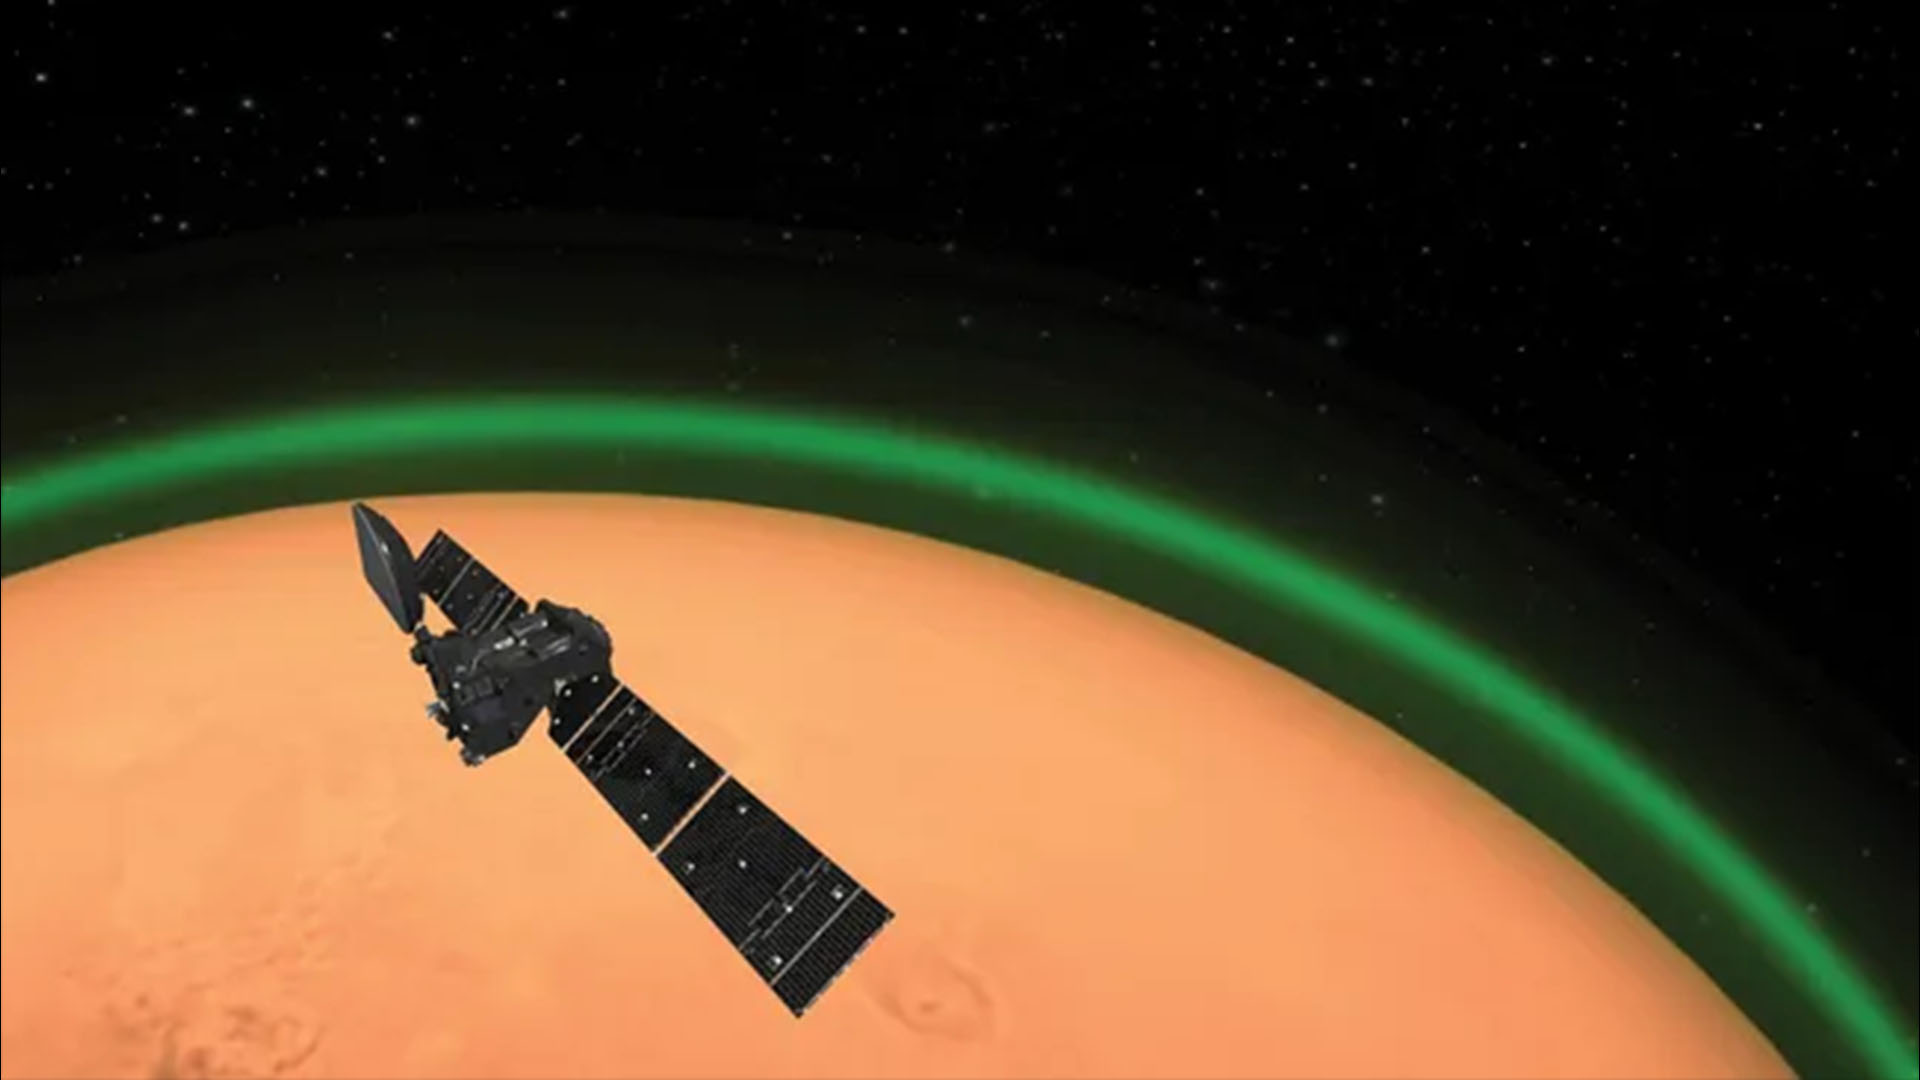 Les astronautes sur Mars pourraient voir un ciel vert, suggère une nouvelle étude étrange